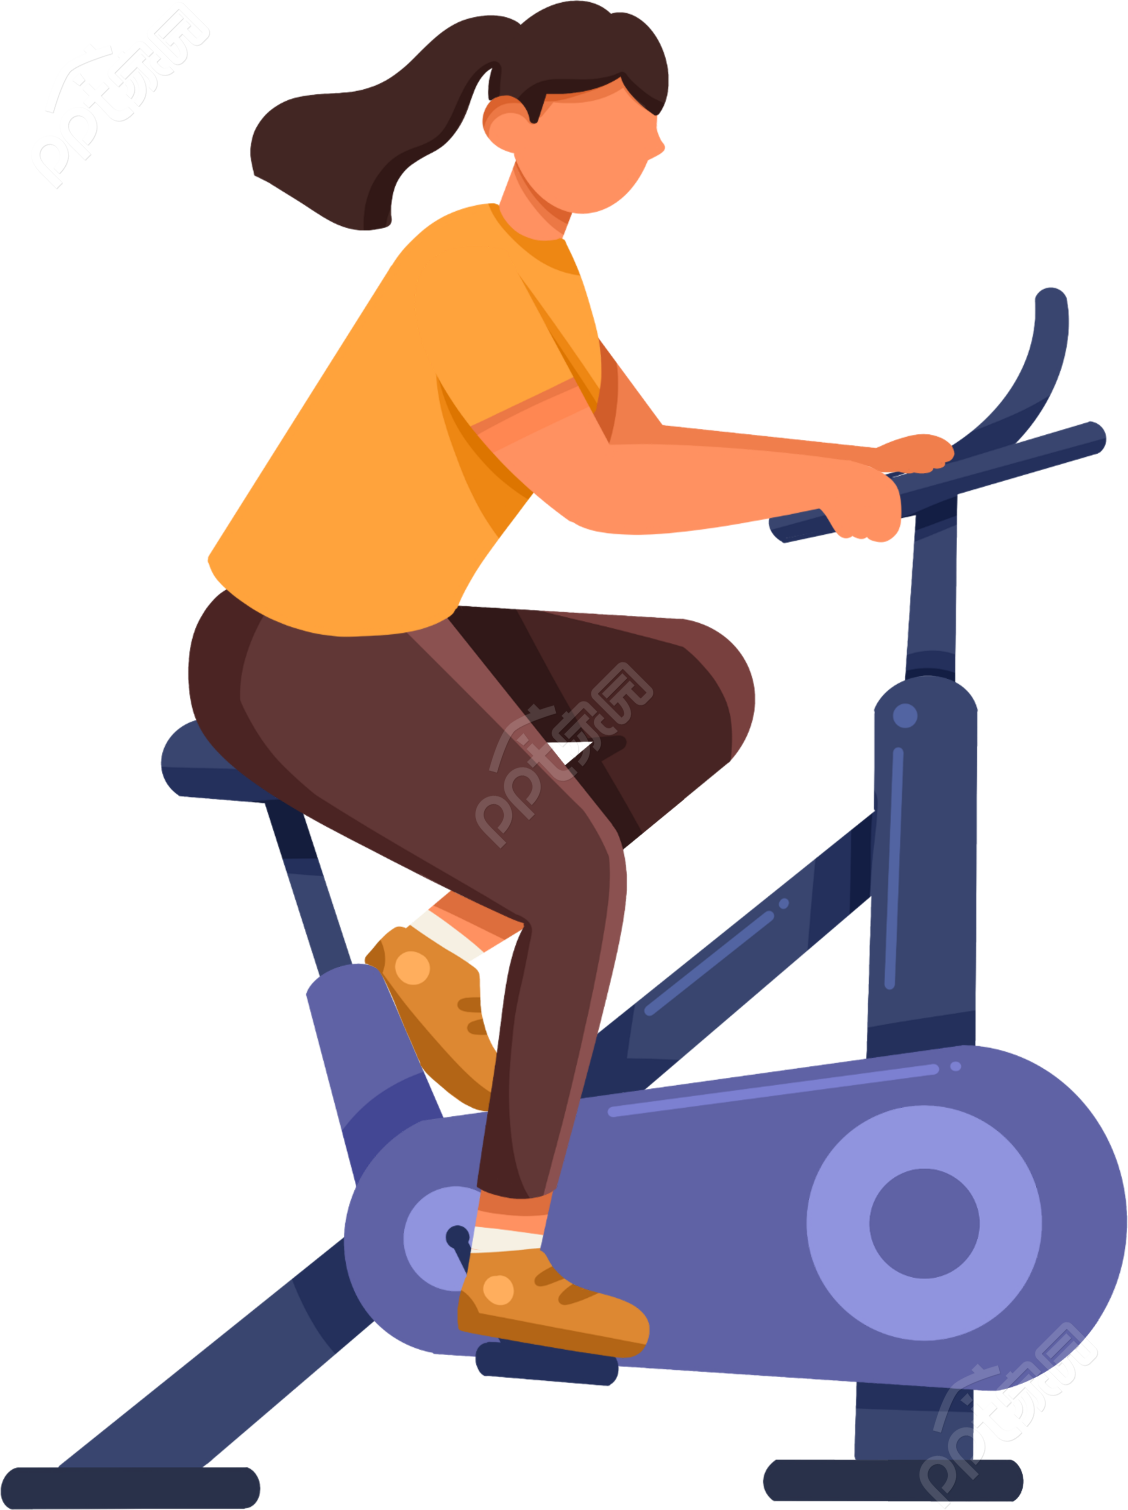 卡通手绘女生人物暑期健身训练营减肥瘦身动感单车矢量图片素材